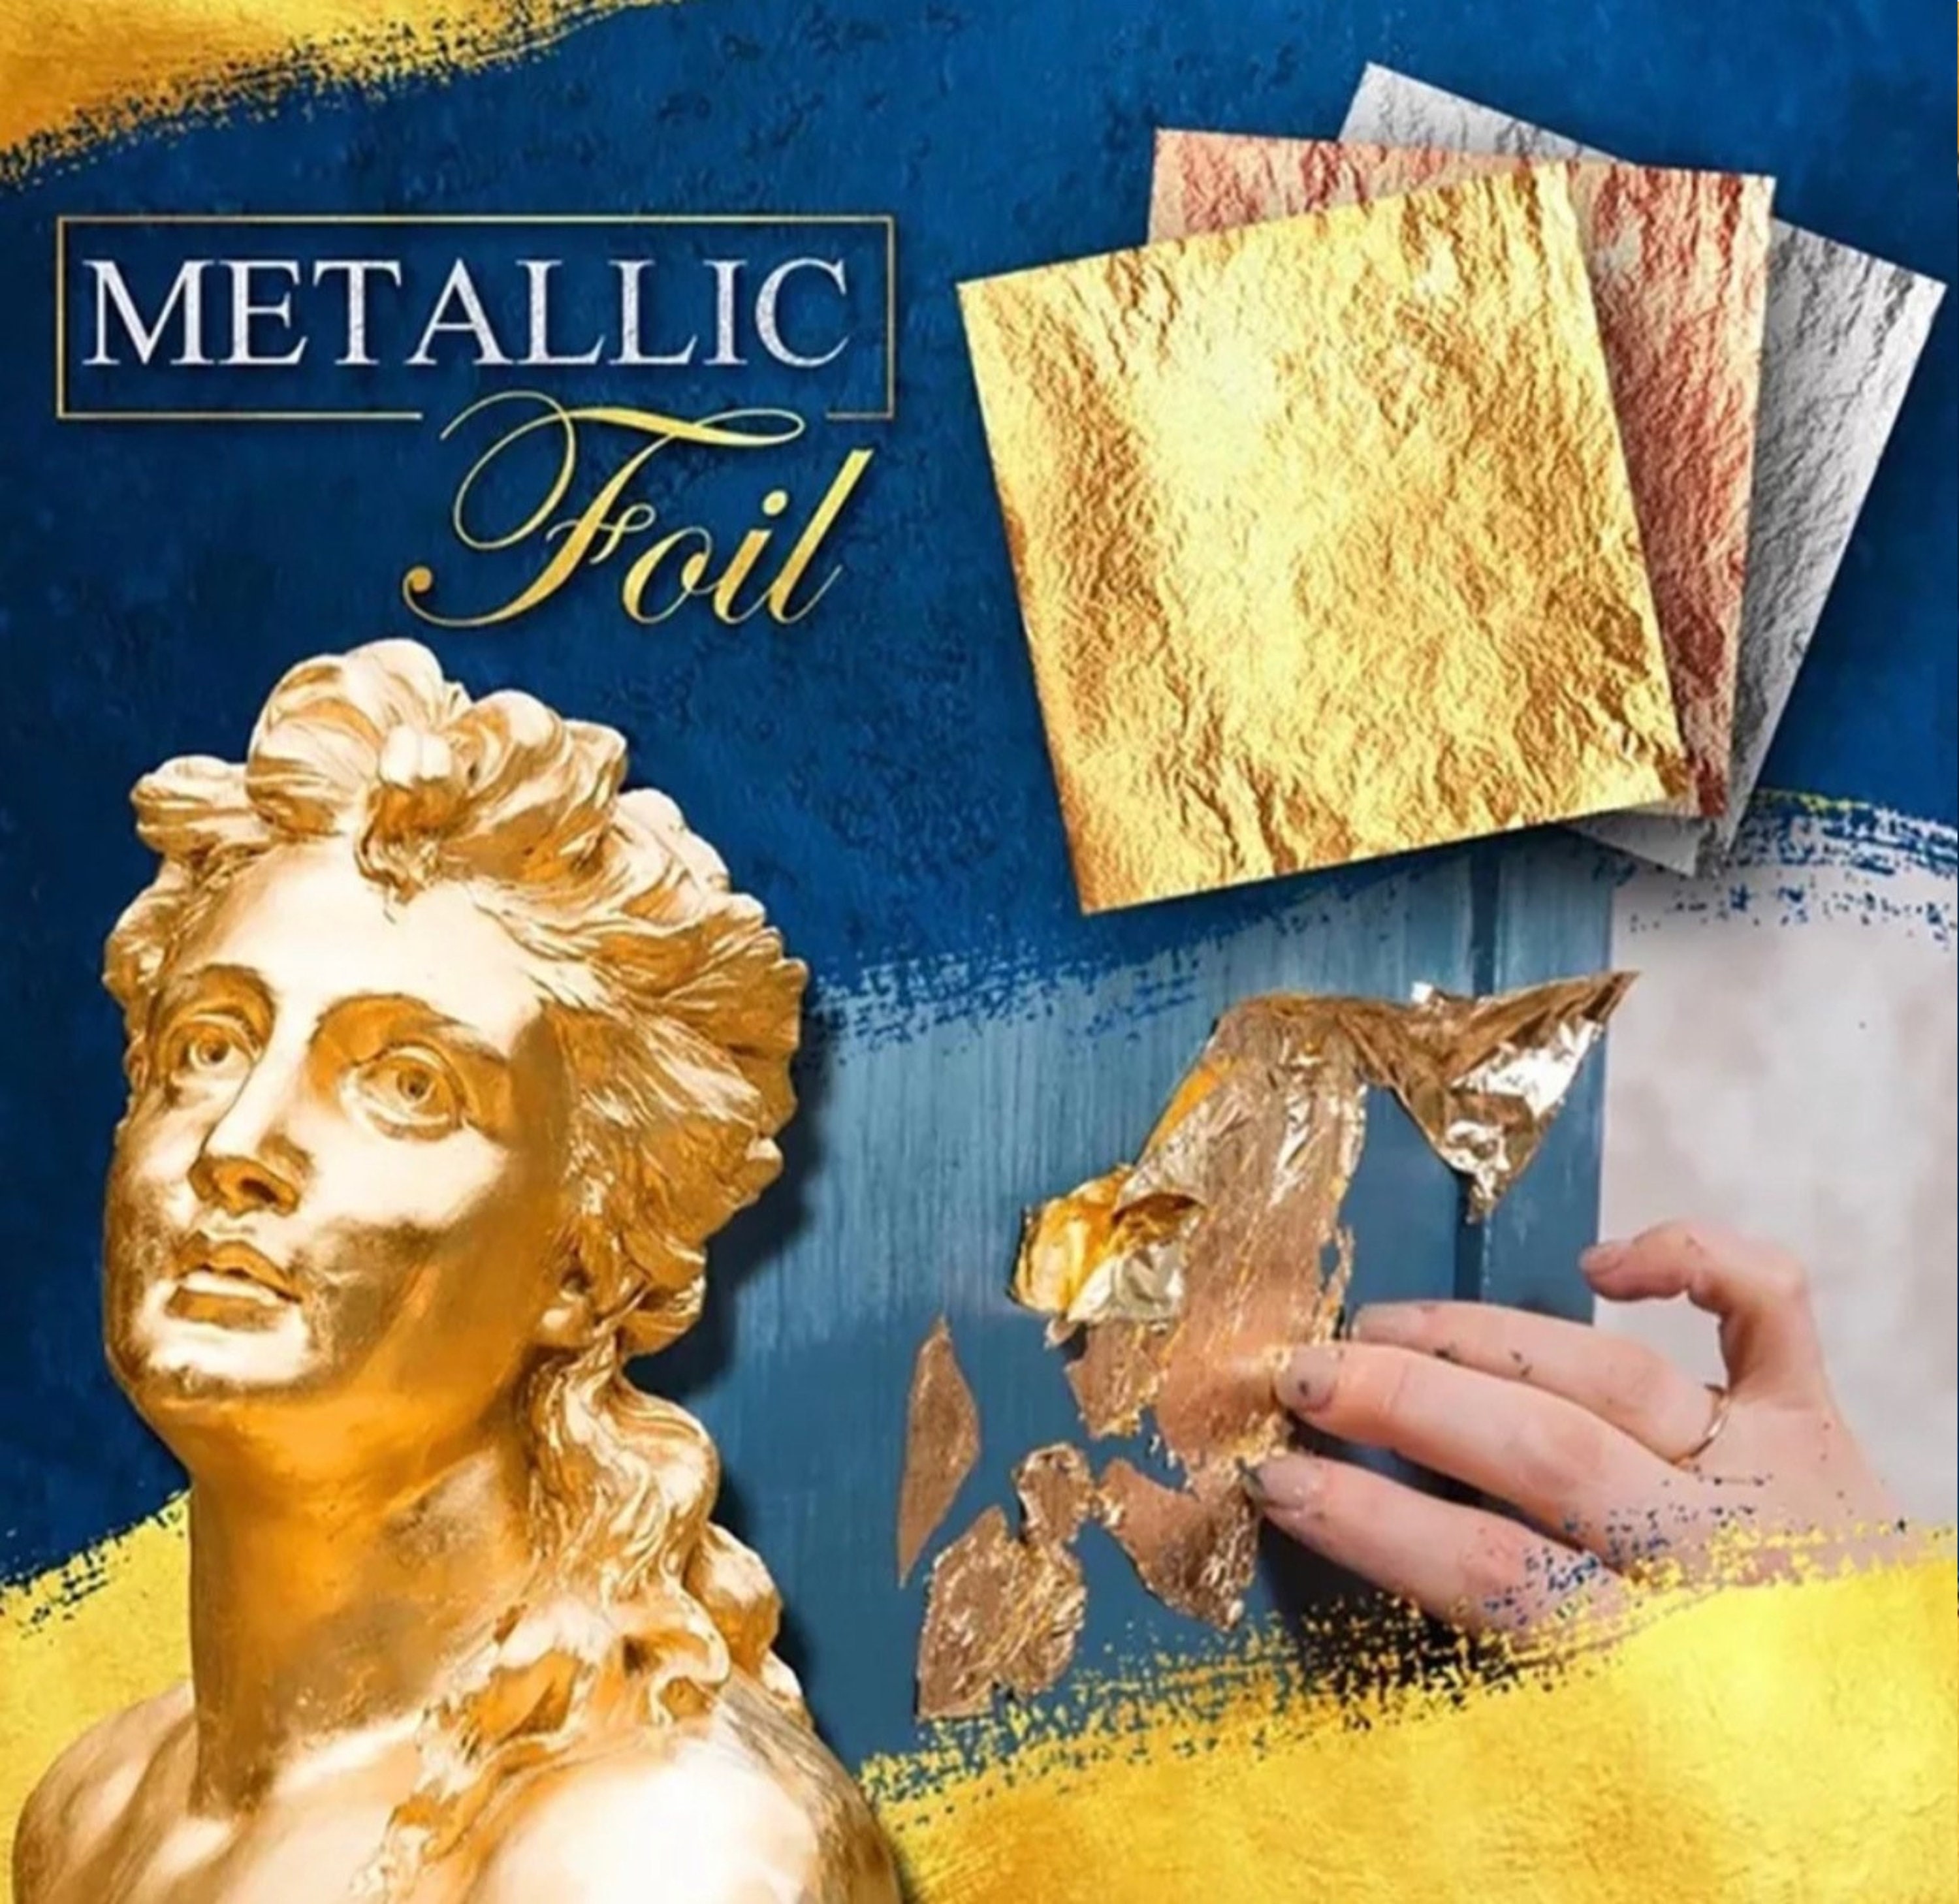 Gold Leaf Sheets, Loose Leaf Type Art Foil, Gold Foil Sheets in 8x8cm 